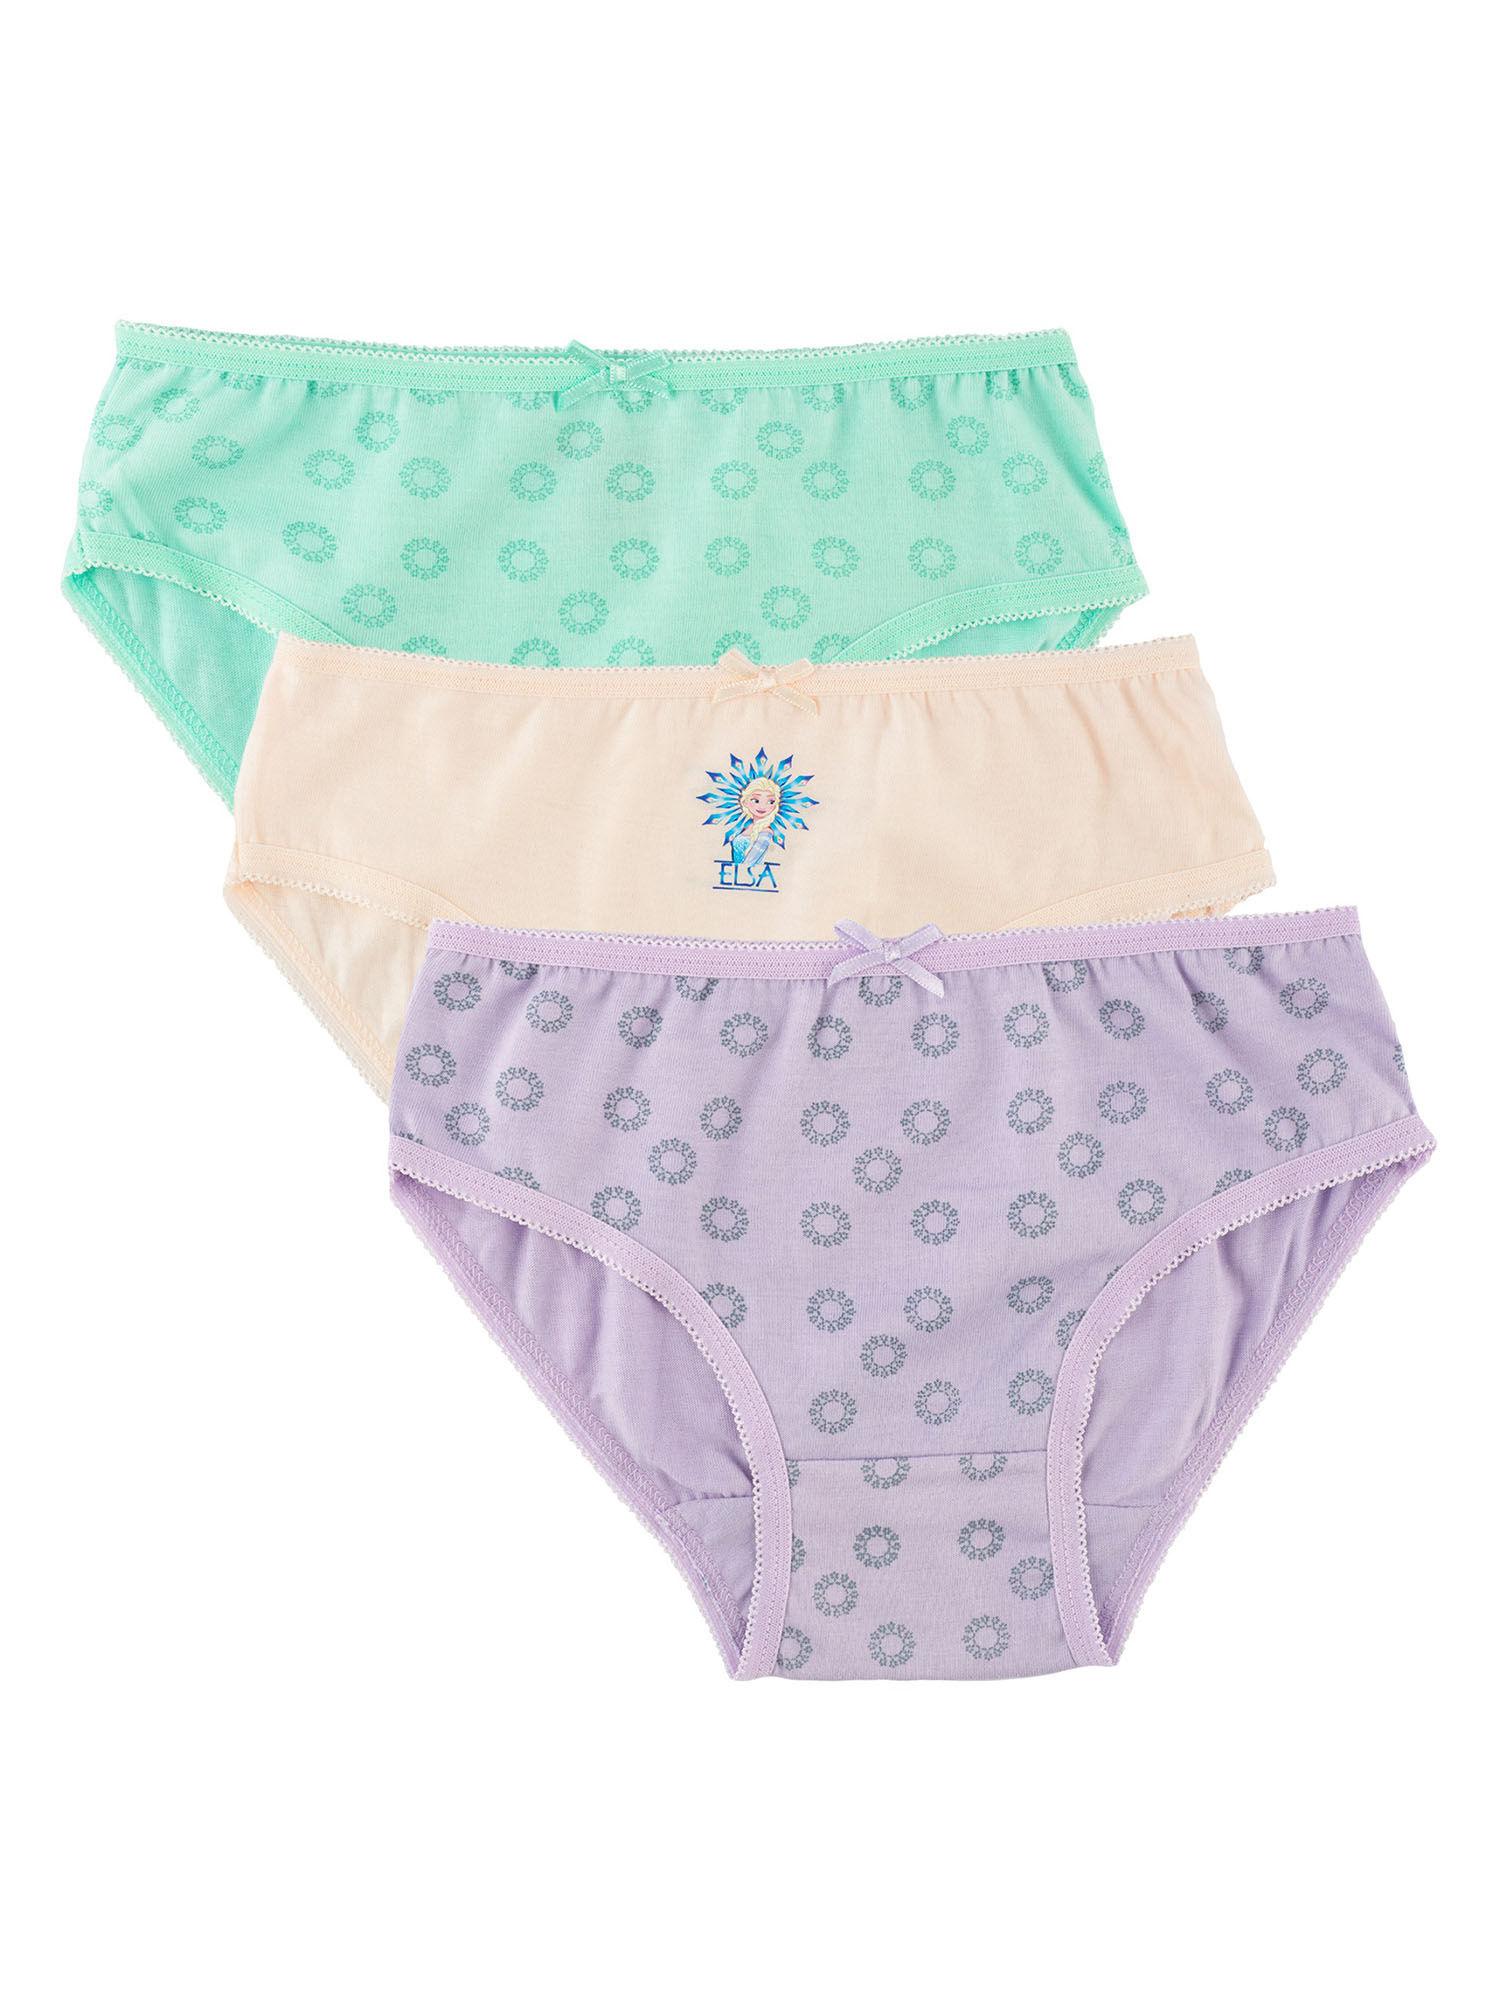 girls frozen printed brief underwear innerwear multicolor (pack of 3)